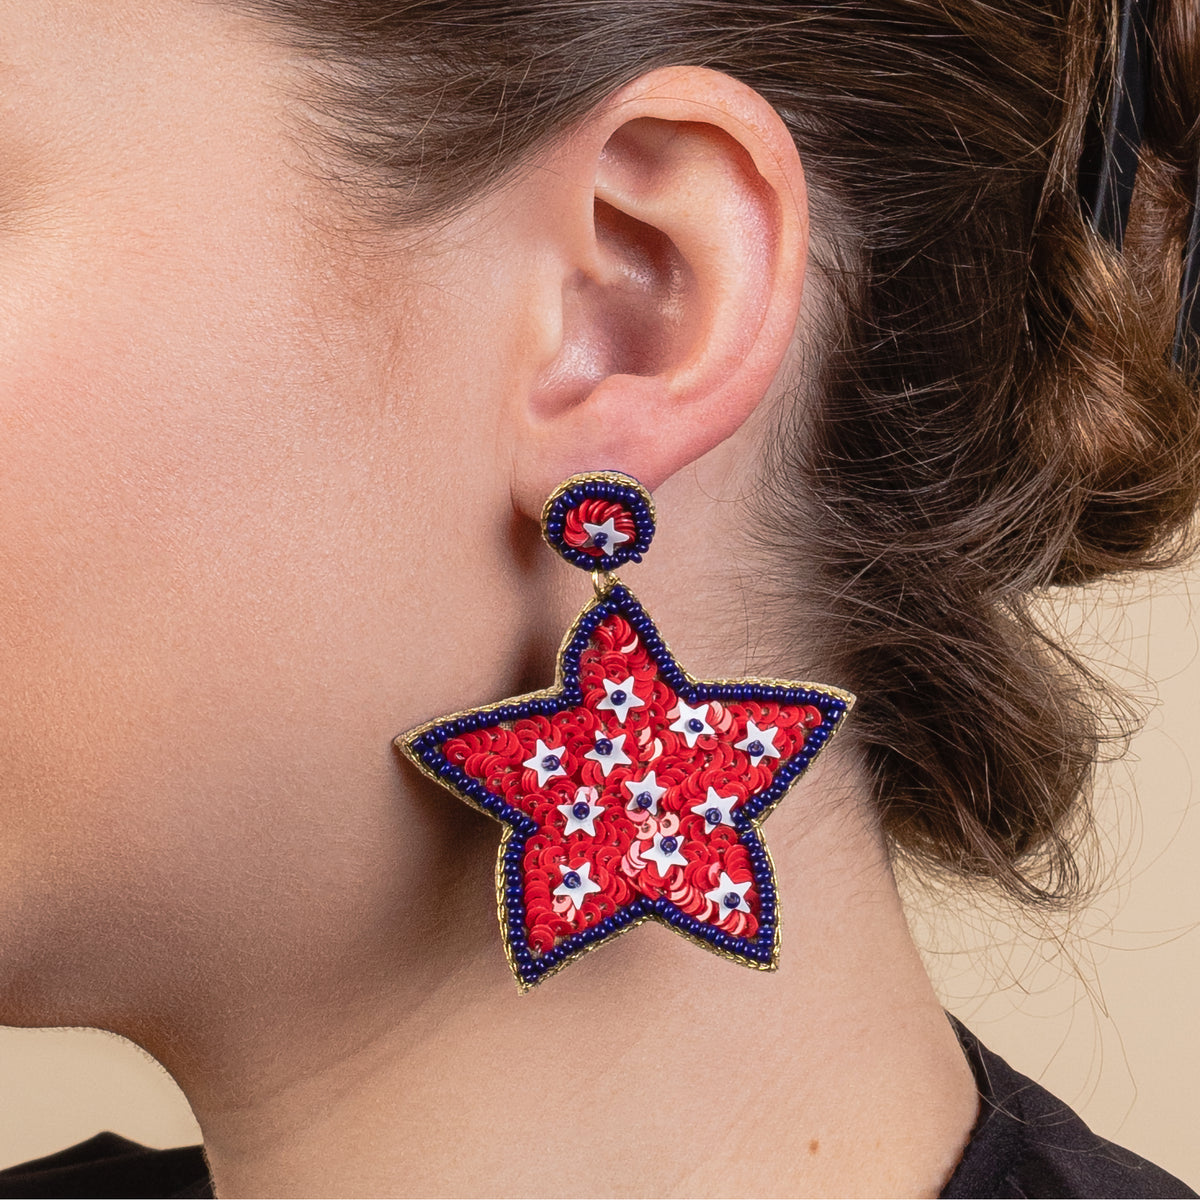 1544 - Star Earrings - Red, White, & Blue